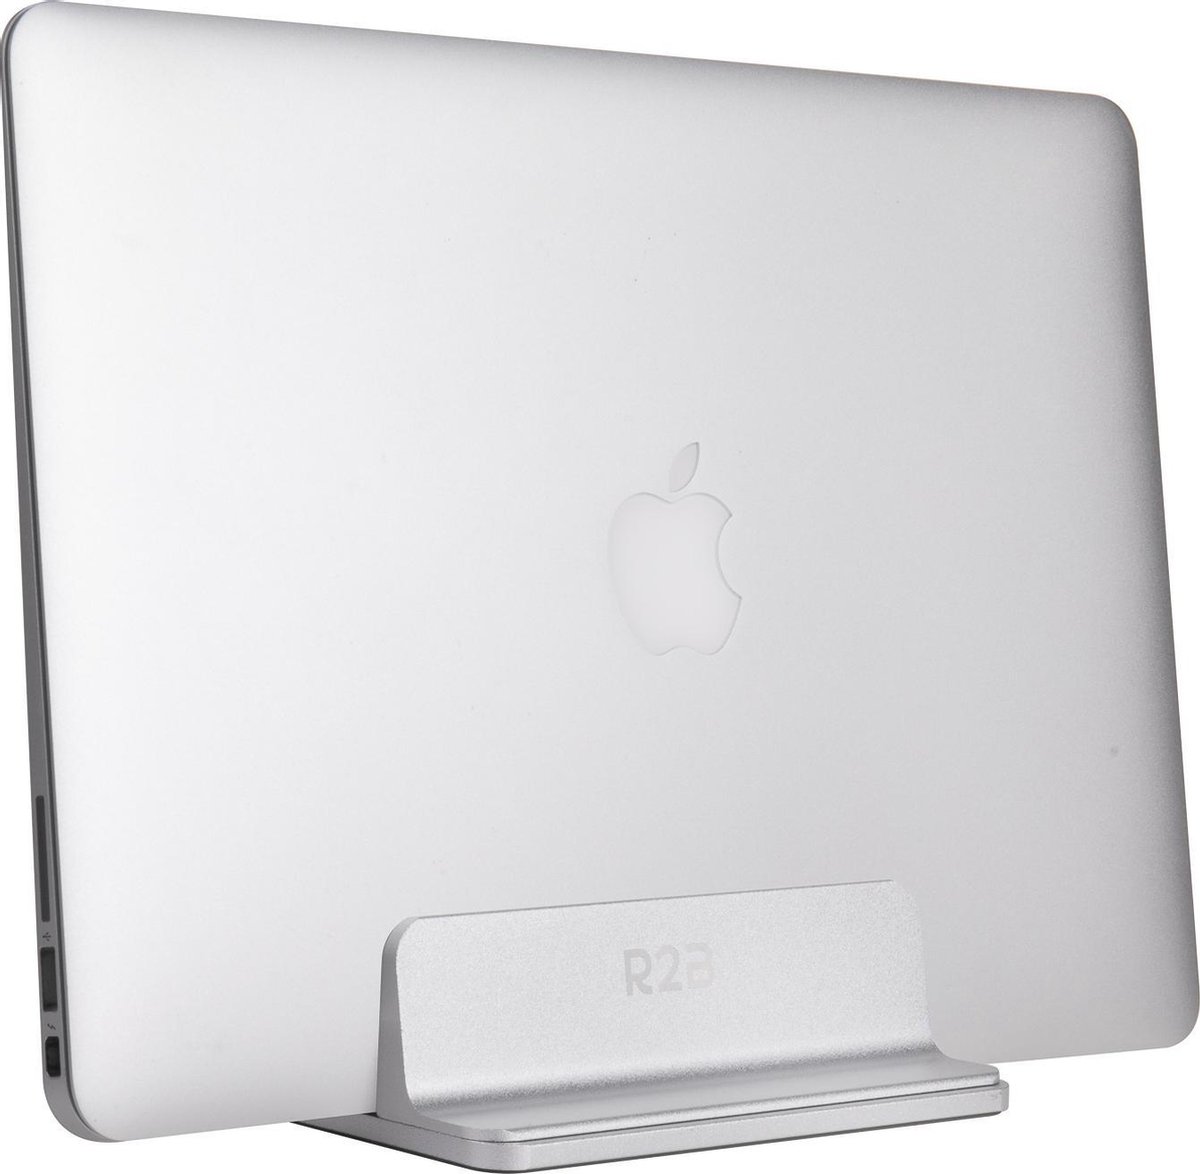 R2B® Laptophouder geschikt voor laptops en tablets - Model Oss - Zilver - Laptop standaard - Houder - Verhoger - iPad / tablet standaard